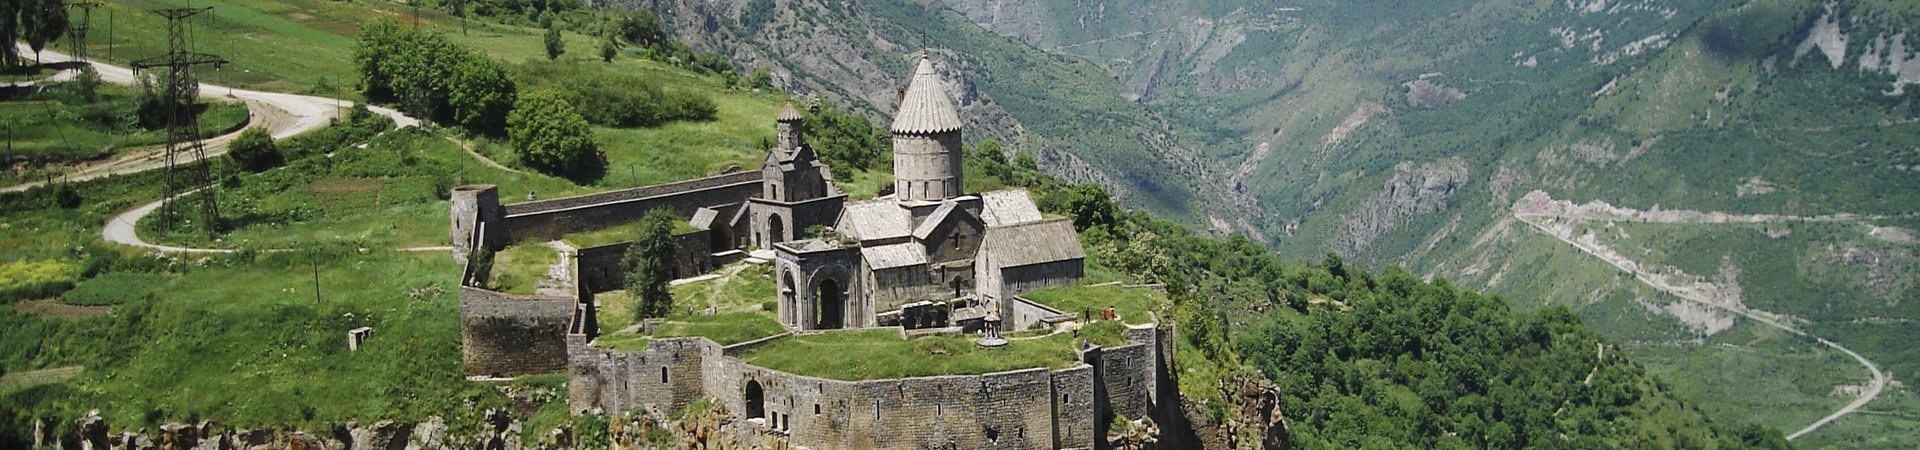 Magia en Armenia